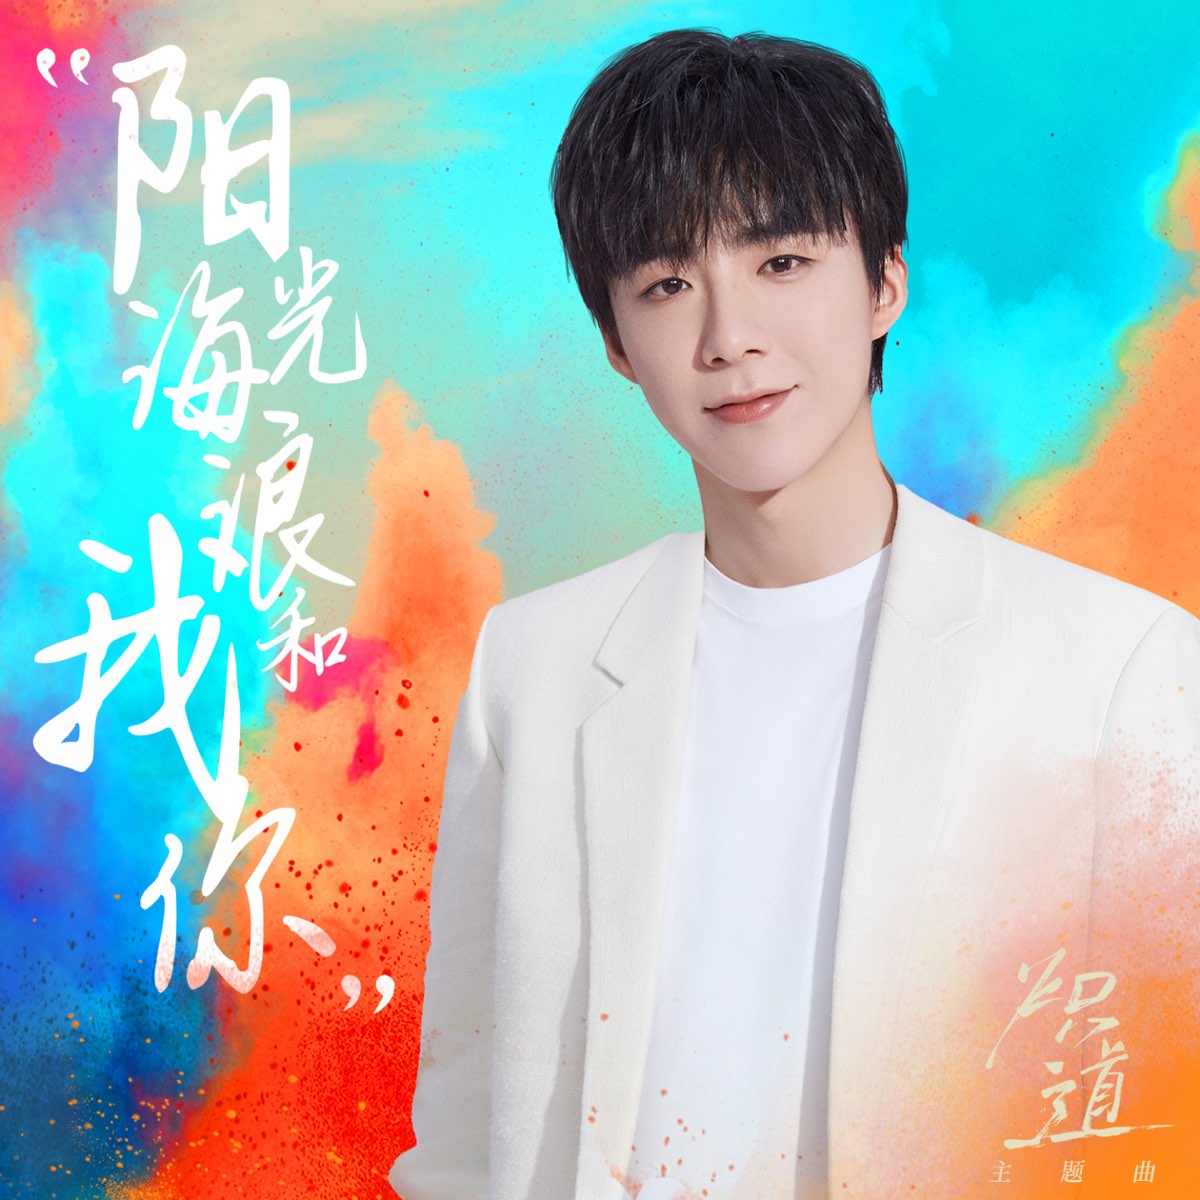 ‎阳光、海浪、我和你 (网剧《炽道》主题曲) - Single - Album by Liu Yu Ning - Apple Music